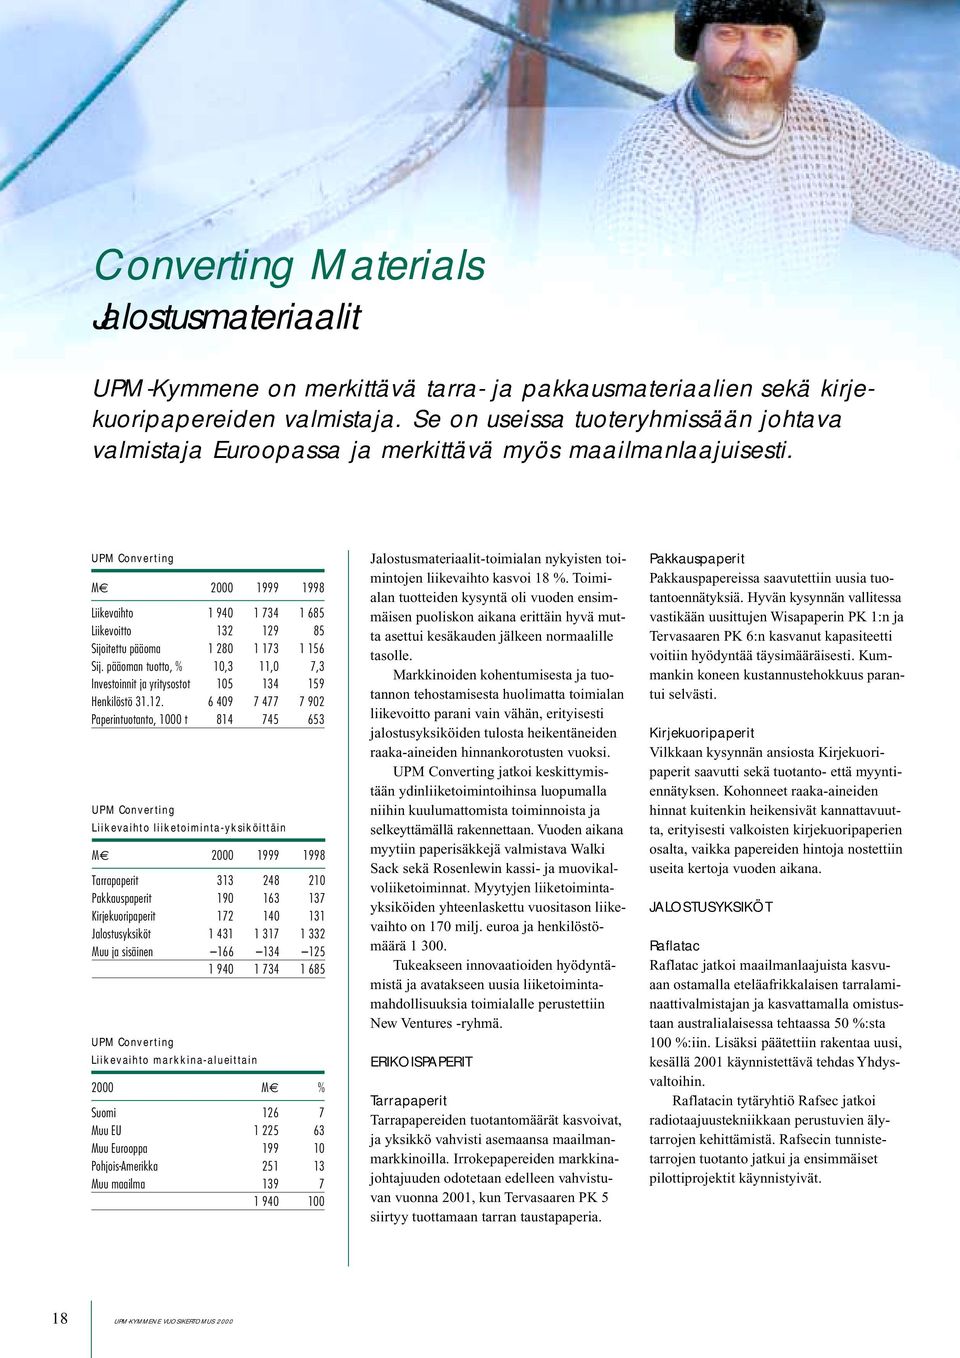 UPM Converting M 2000 1999 1998 Liikevaihto 1 940 1 734 1 685 Liikevoitto 132 129 85 Sijoitettu pääoma 1 280 1 173 1 156 Sij.